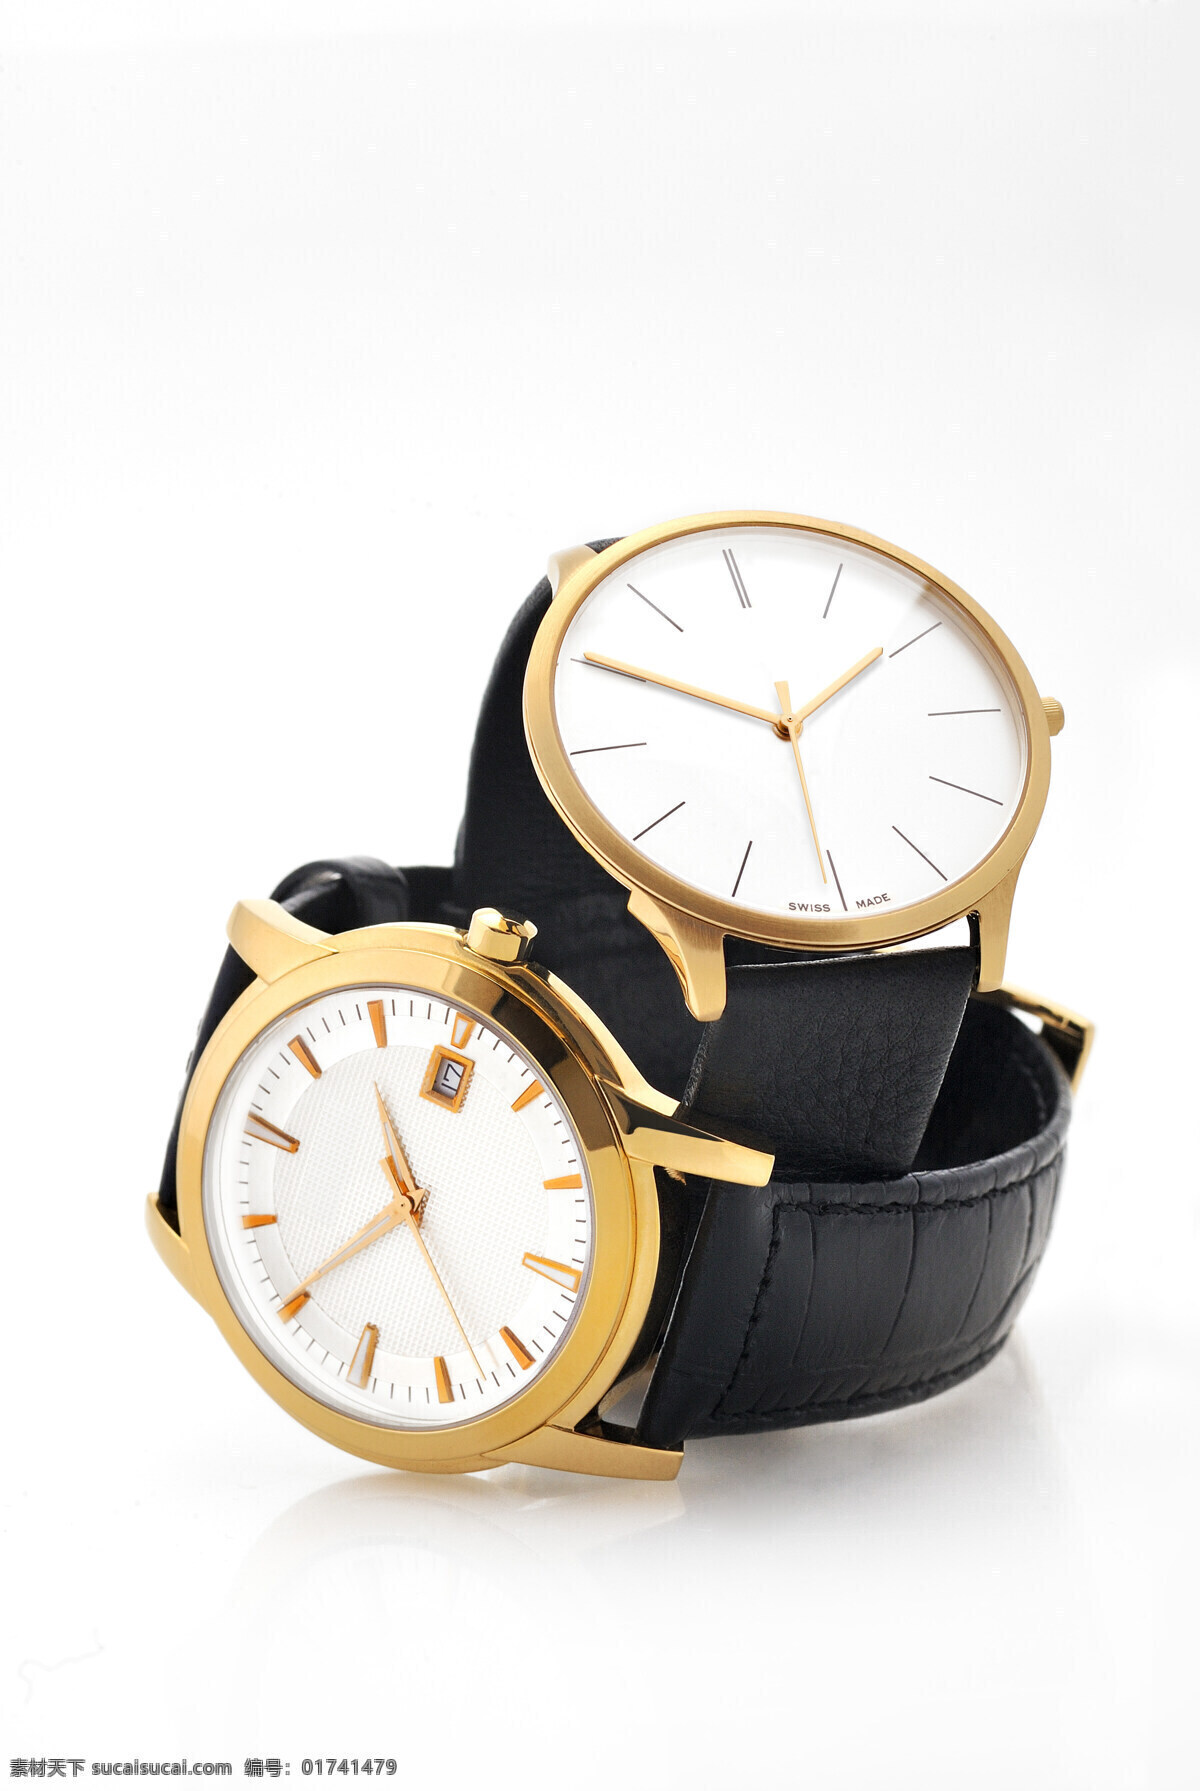 金色 手表 高档手表 名表 腕表 钟表 时间 生活用品 钟表图片 生活百科